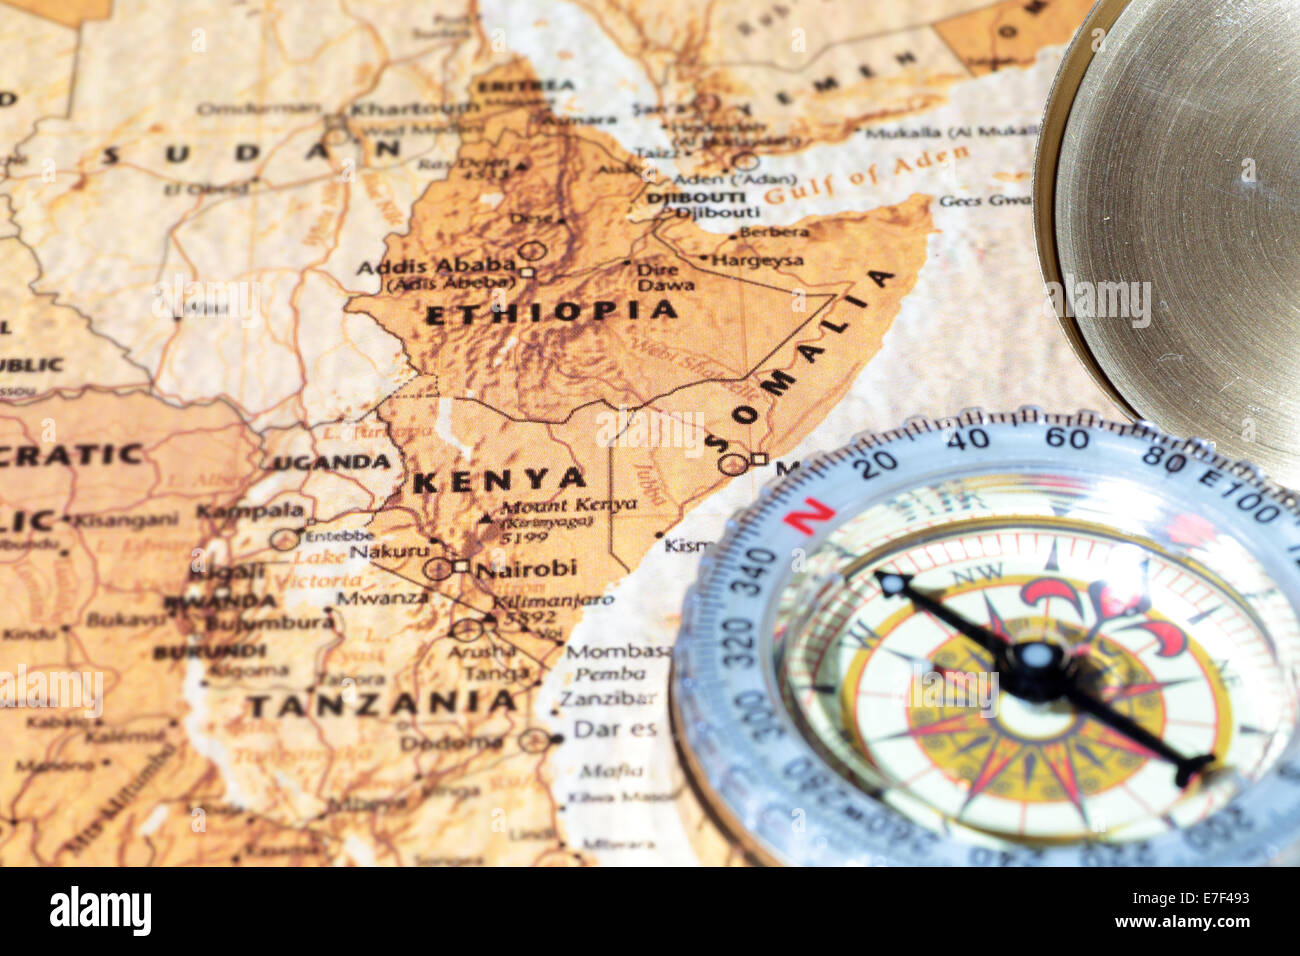 Kompass auf einer Karte zeigt auf Kenia, Äthiopien und Somalia, planen eine Reise Wert Stockfoto